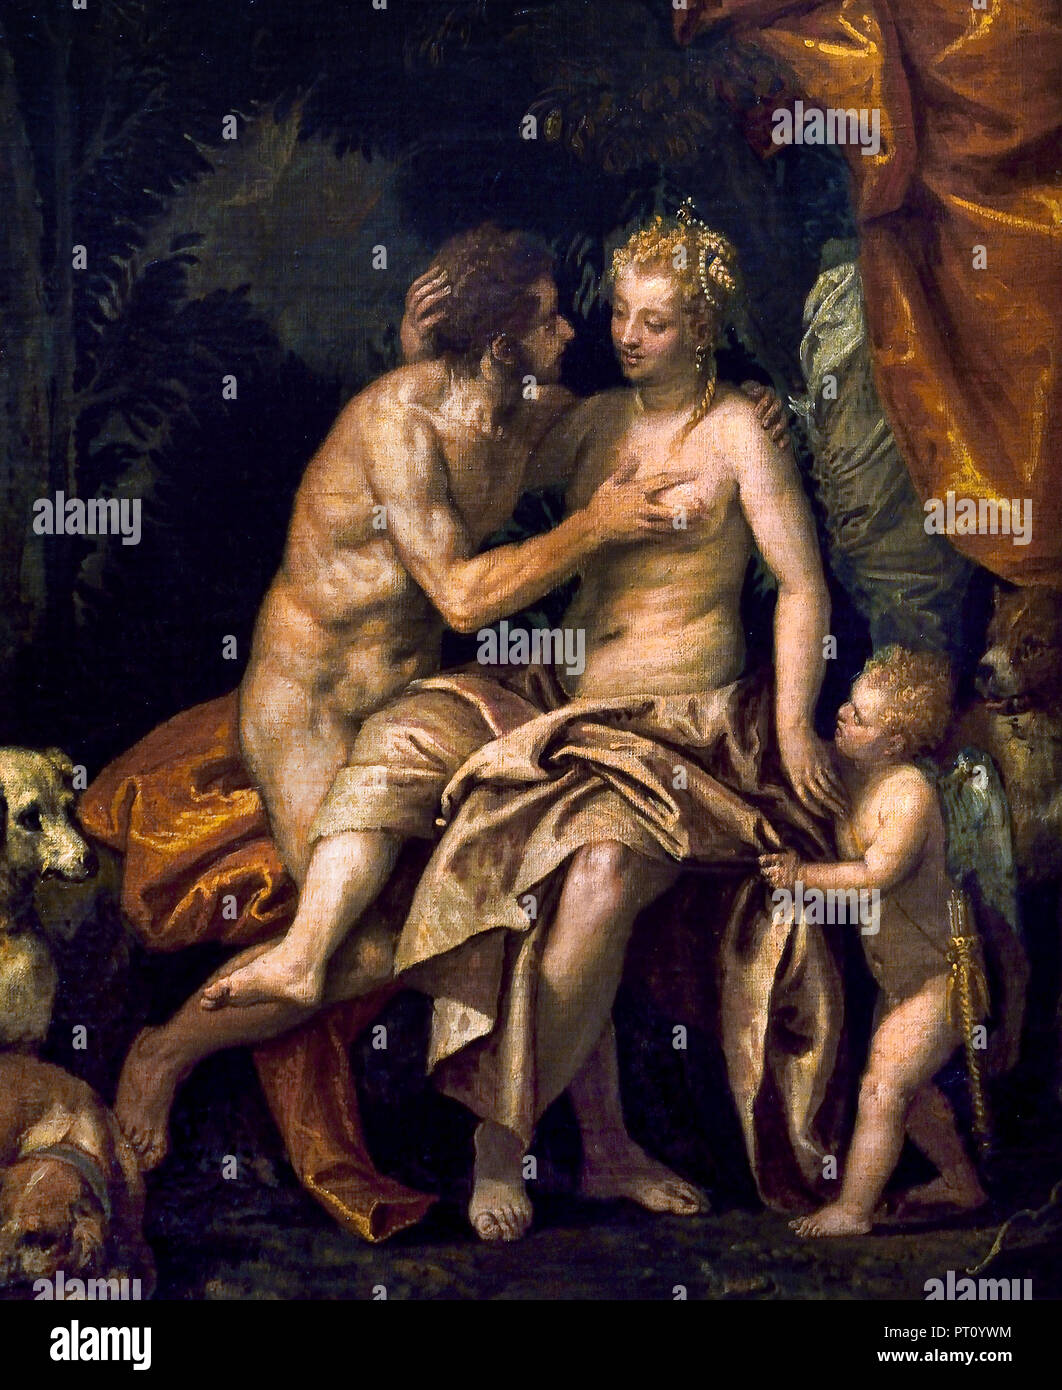 Venus und Adonis 1586 von Paolo Caliari, bekannt als Paolo Veronese (1528 - 1588), war ein italienischer Renaissance Maler, Venedig, Italien. (Durch den Pfeil Amors durchbohrt, Venus, Göttin der Liebe, der sich in den gut aussehenden Hunter Adonis gefallen) Stockfoto